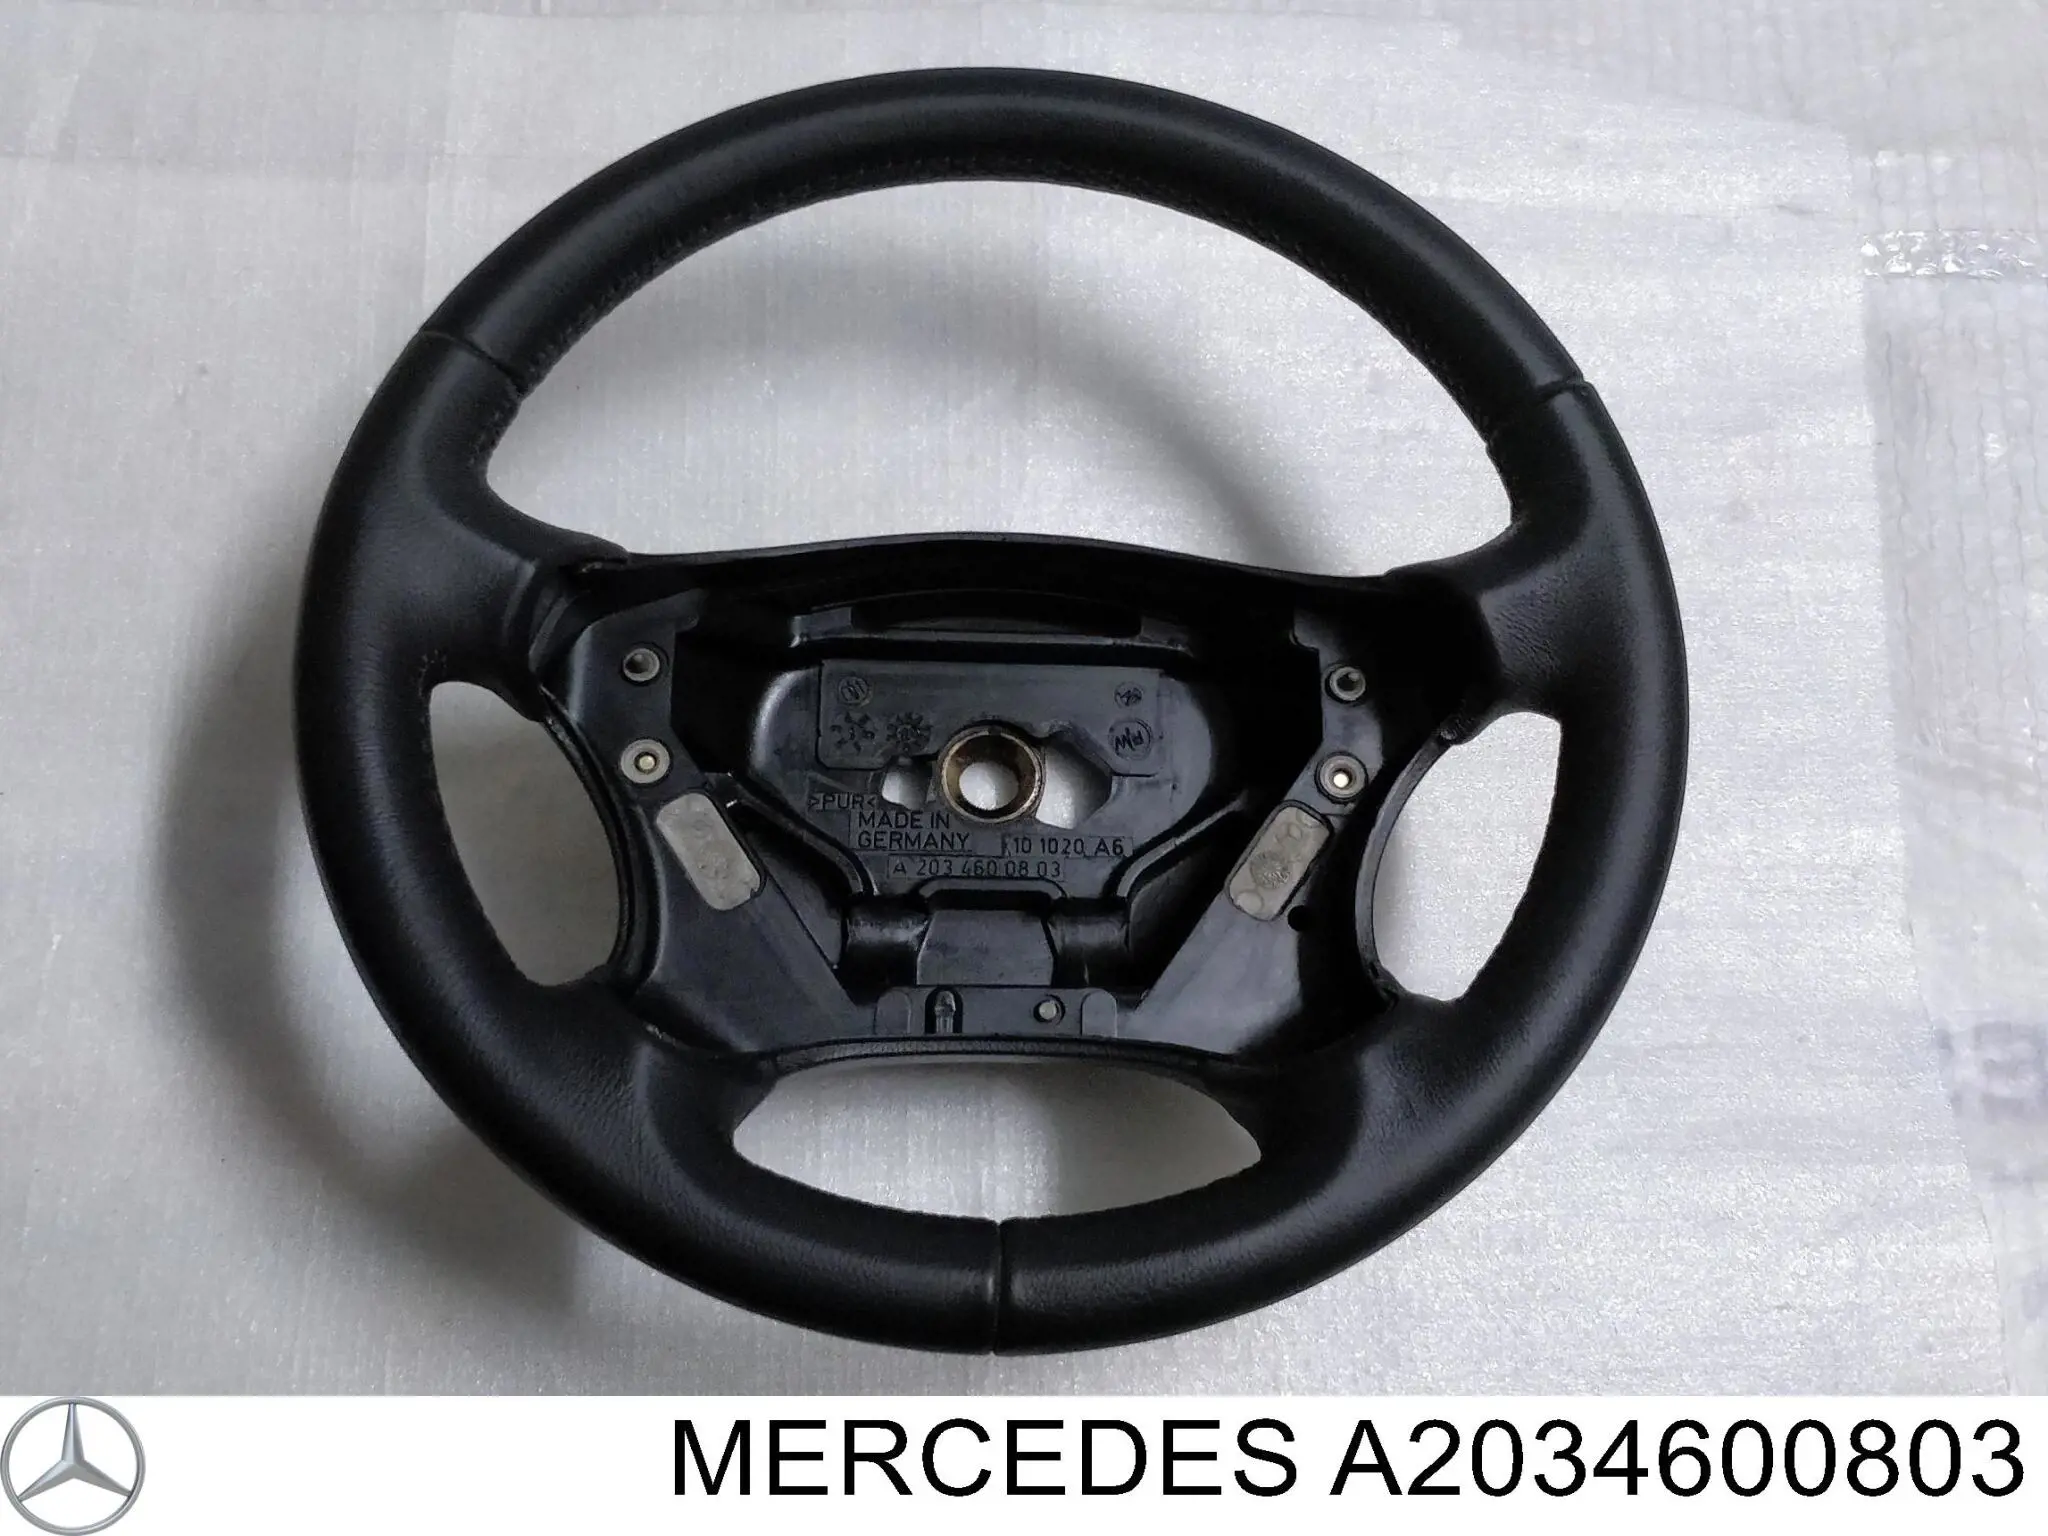 A2034600803 Mercedes volante